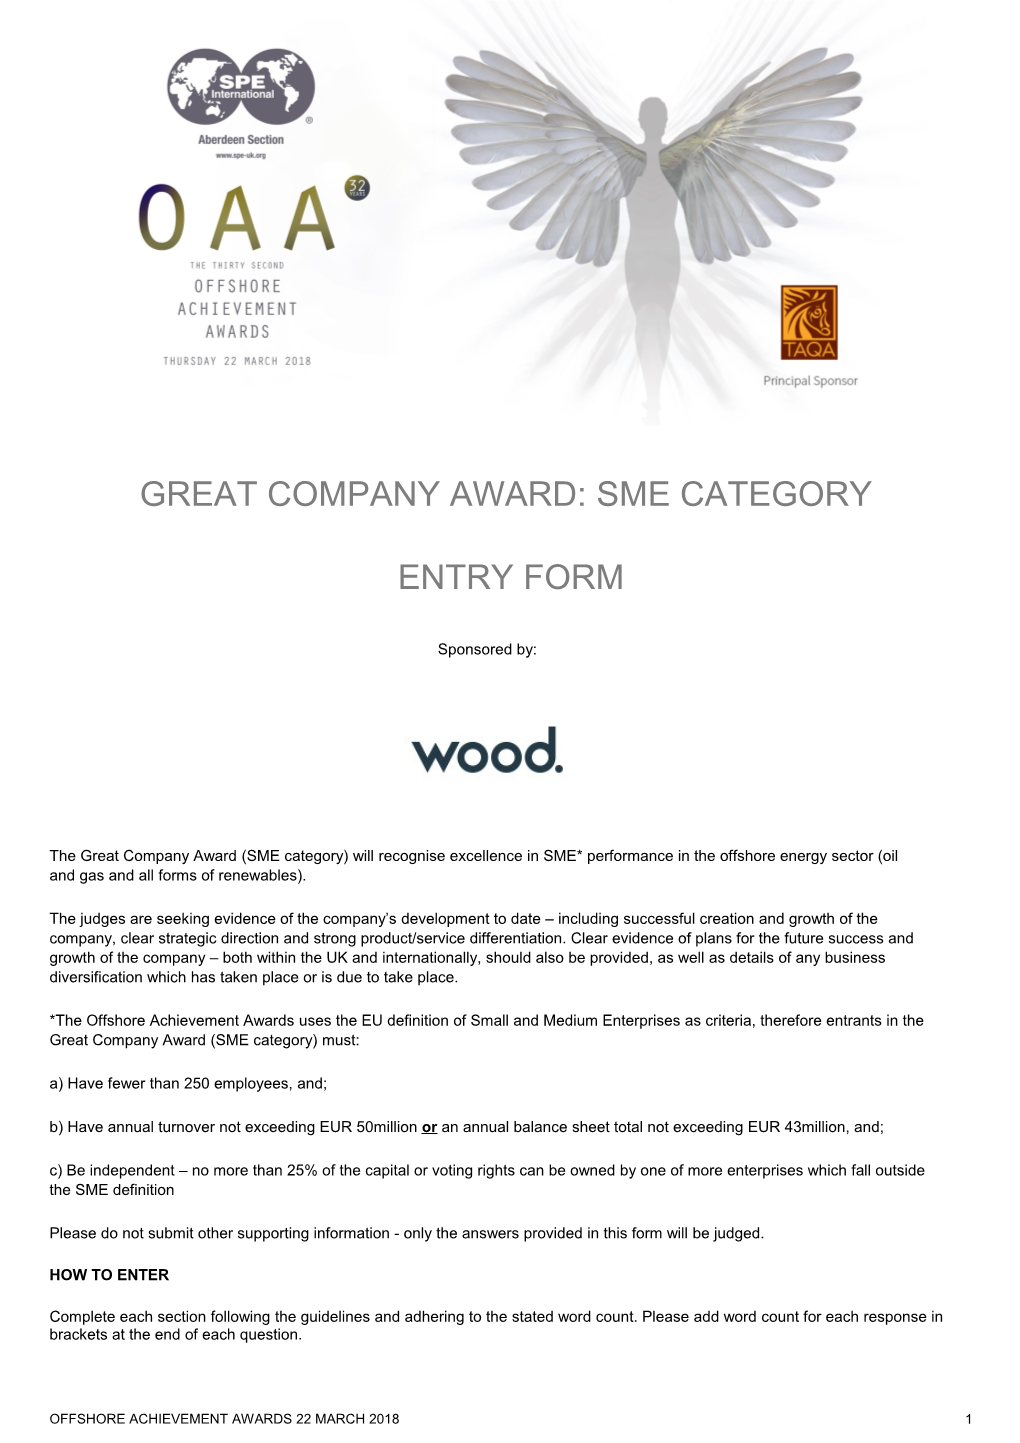 Great Company Award: SME CATEGORY